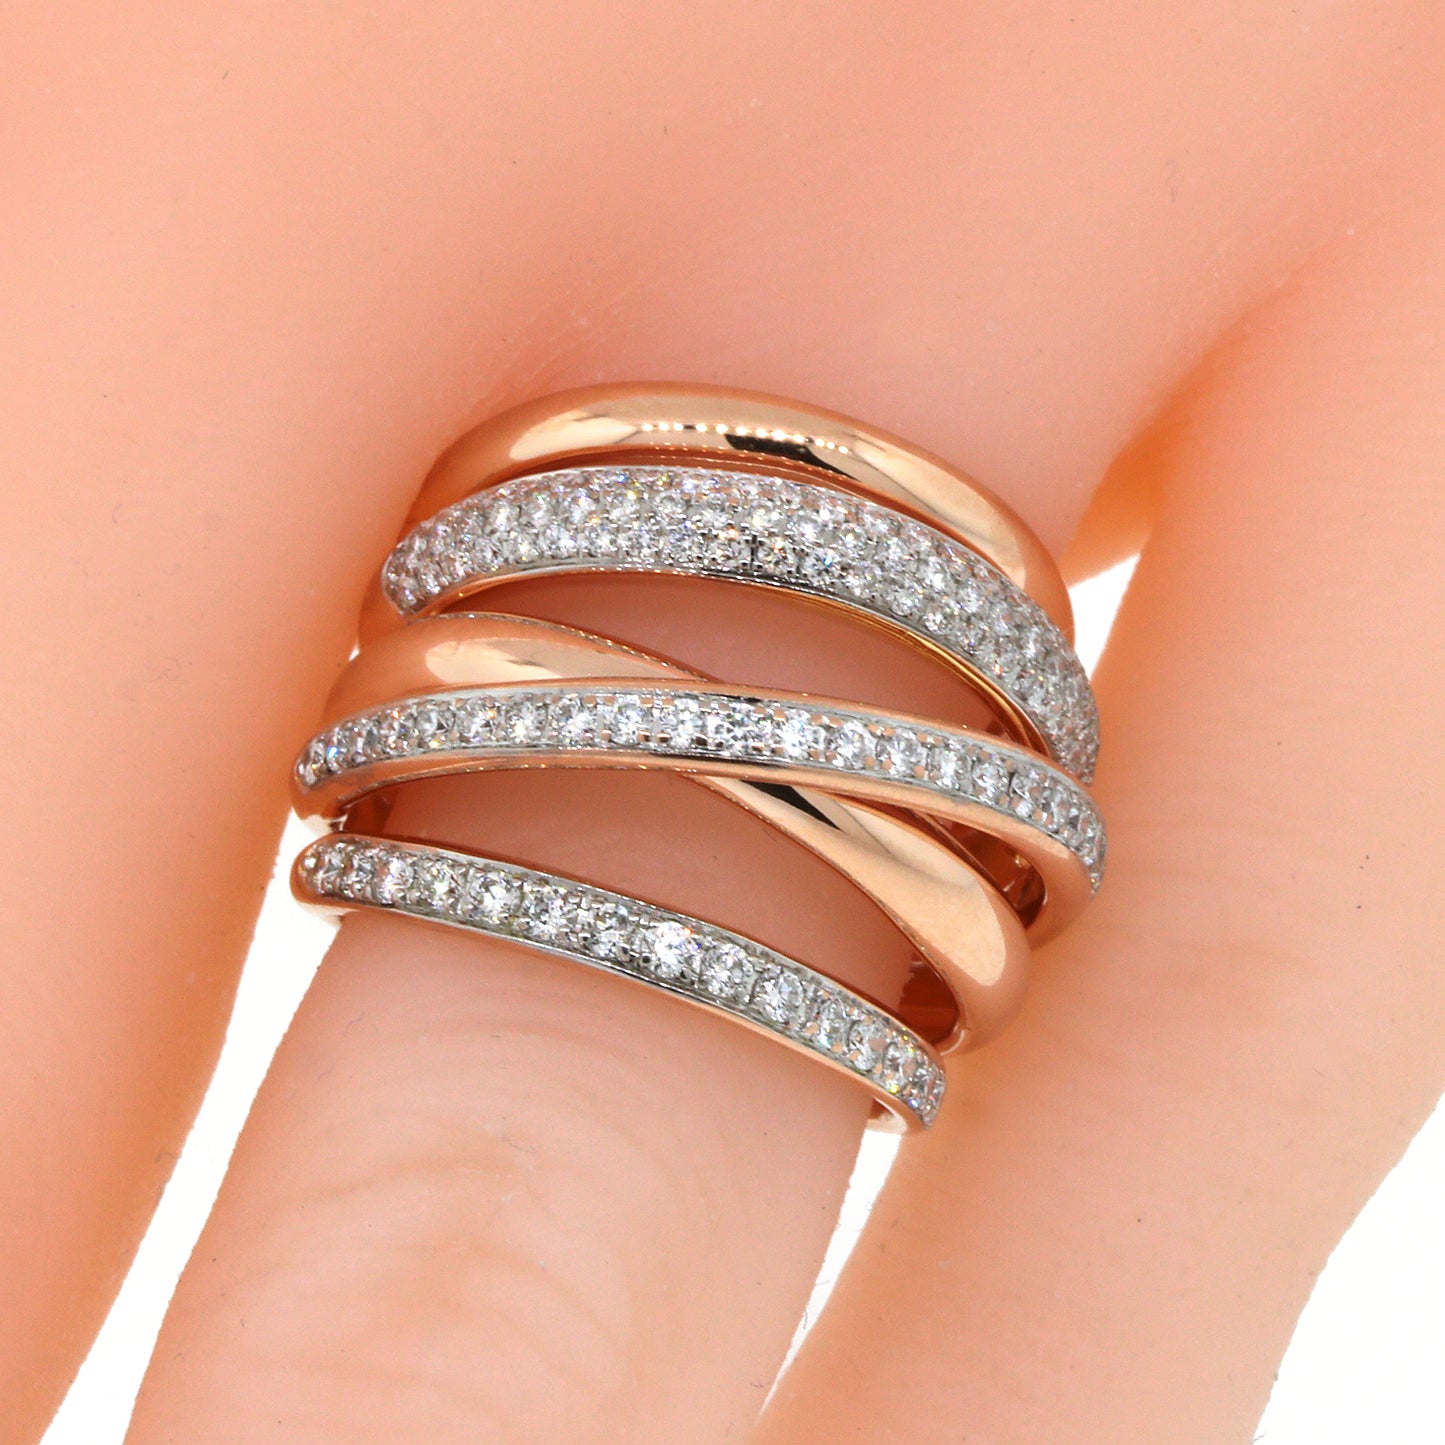 Multi-Row Diamond Band Ring